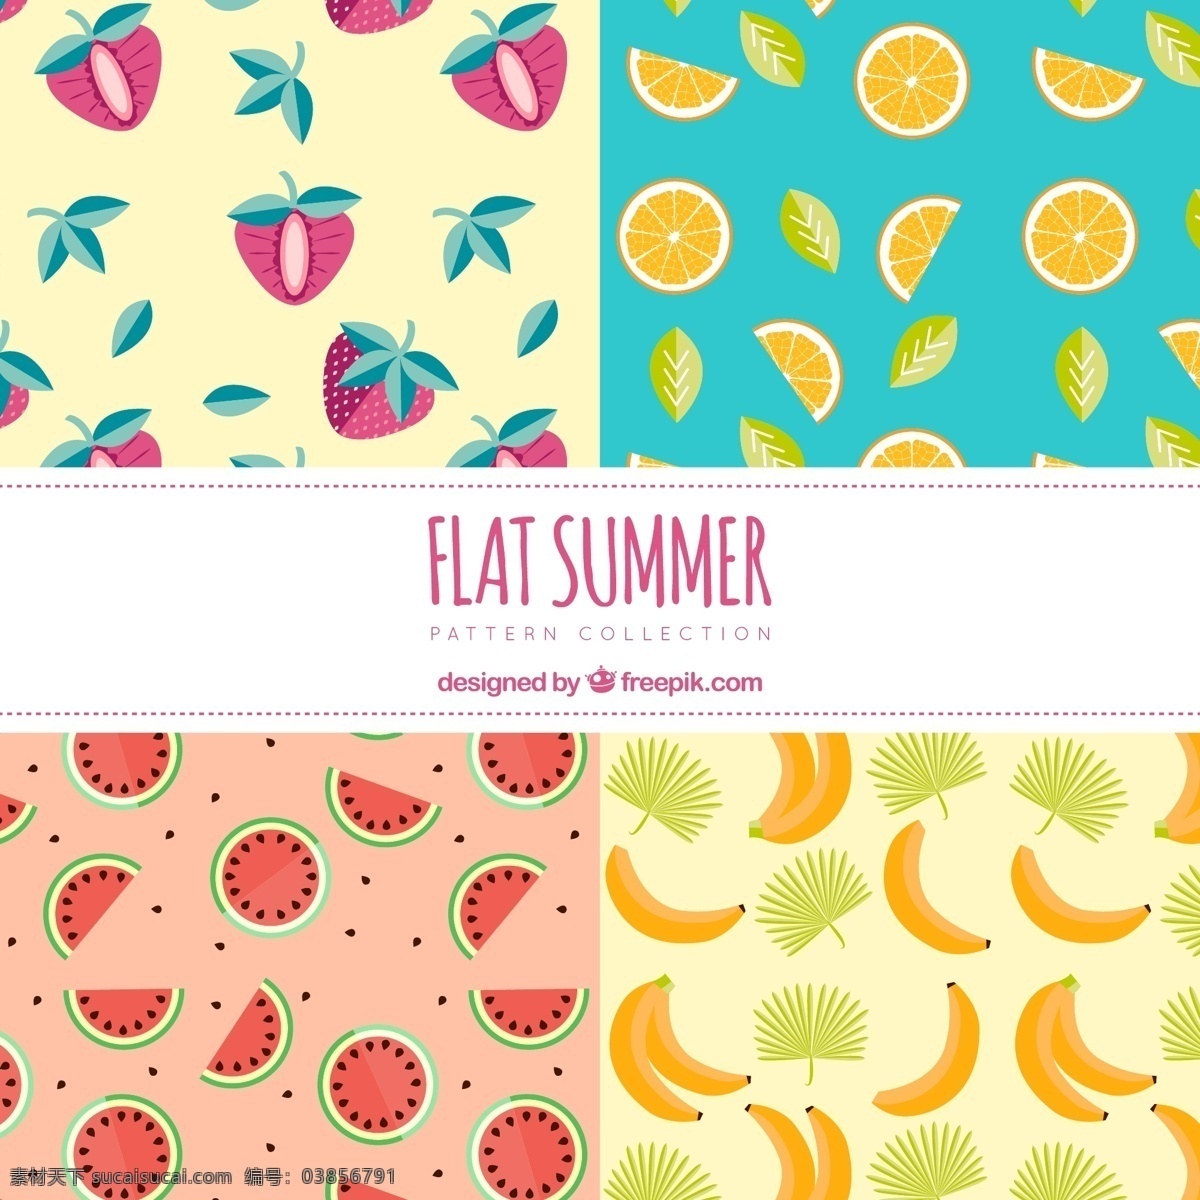 平板 中 夏季 水果 图案 背景 平 无缝模式 香蕉 平面设计 草莓 图案背景 背景设计 夏季海滩 无缝 季节 季节性